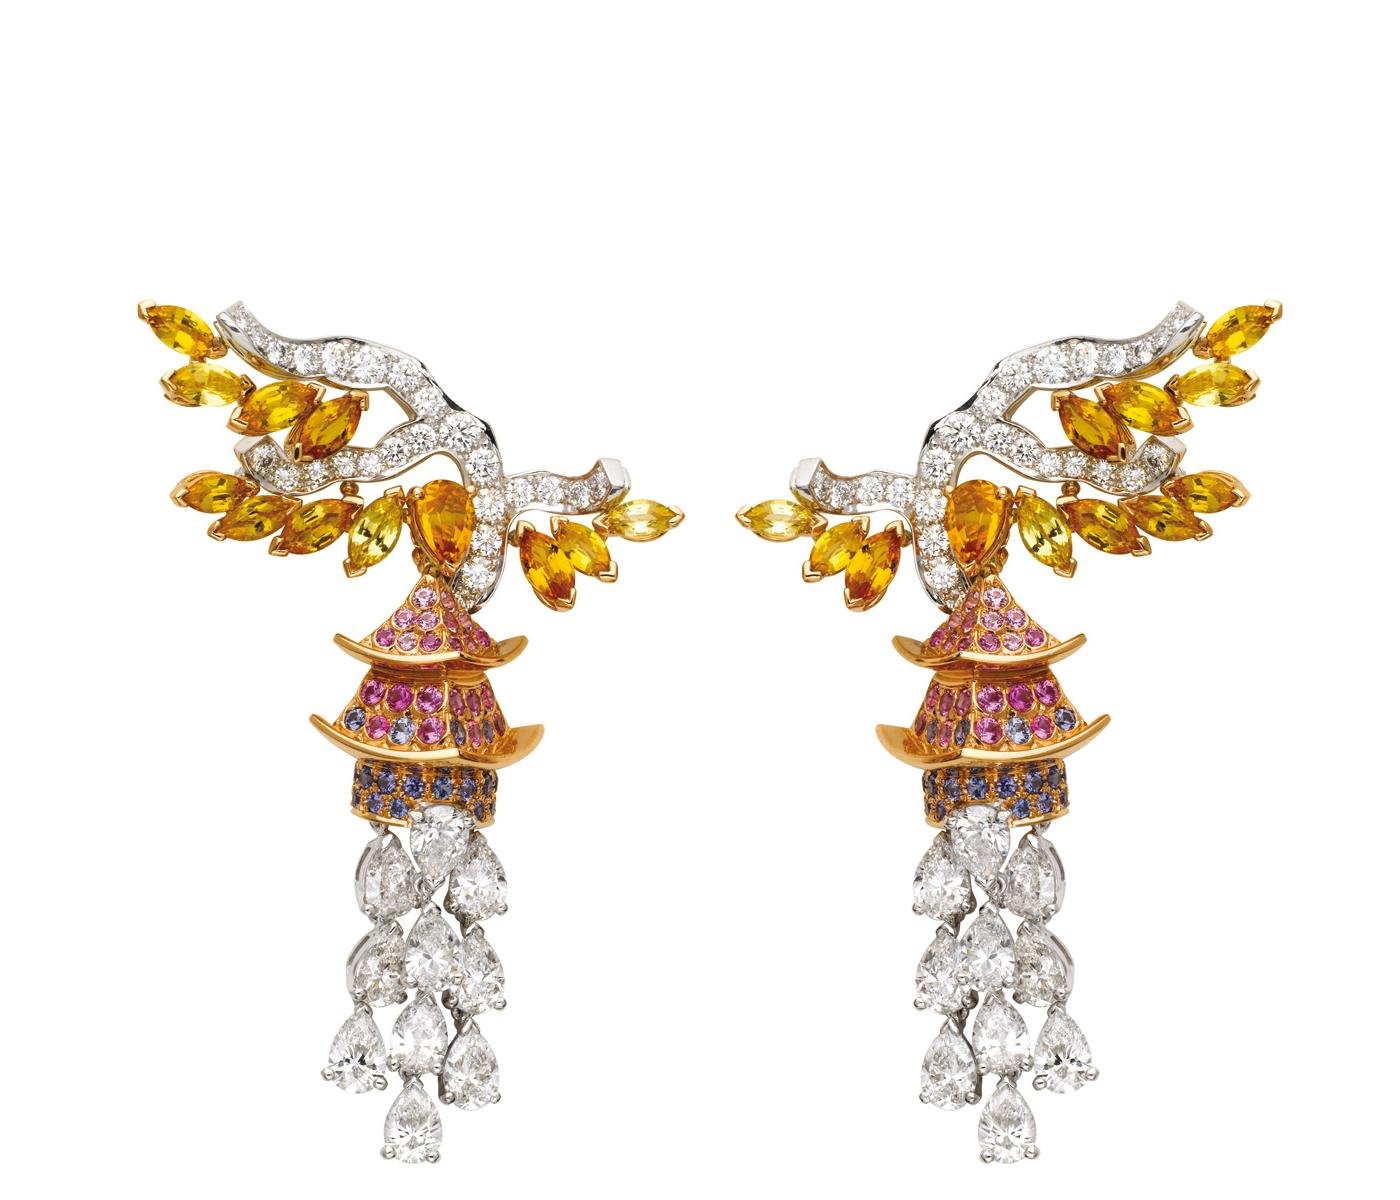 Earrings by Van Cleef & Arpels